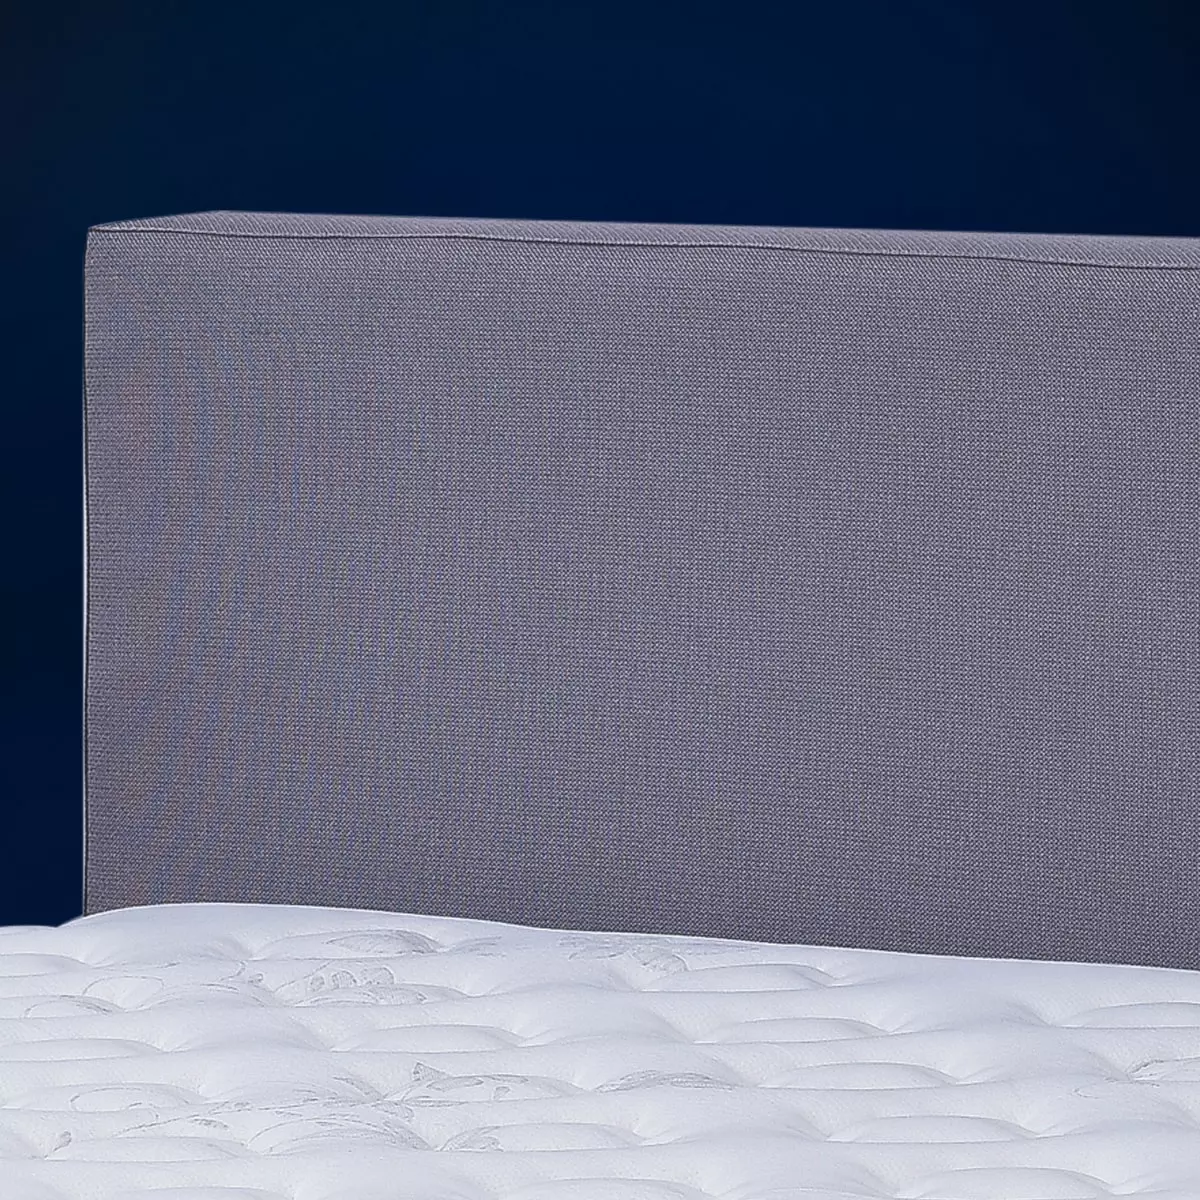 Hälsa Bright Yatak Başlığı | Kişiye Özel Üretim İsveç Tasarımı Yatak Odası Mobilyası